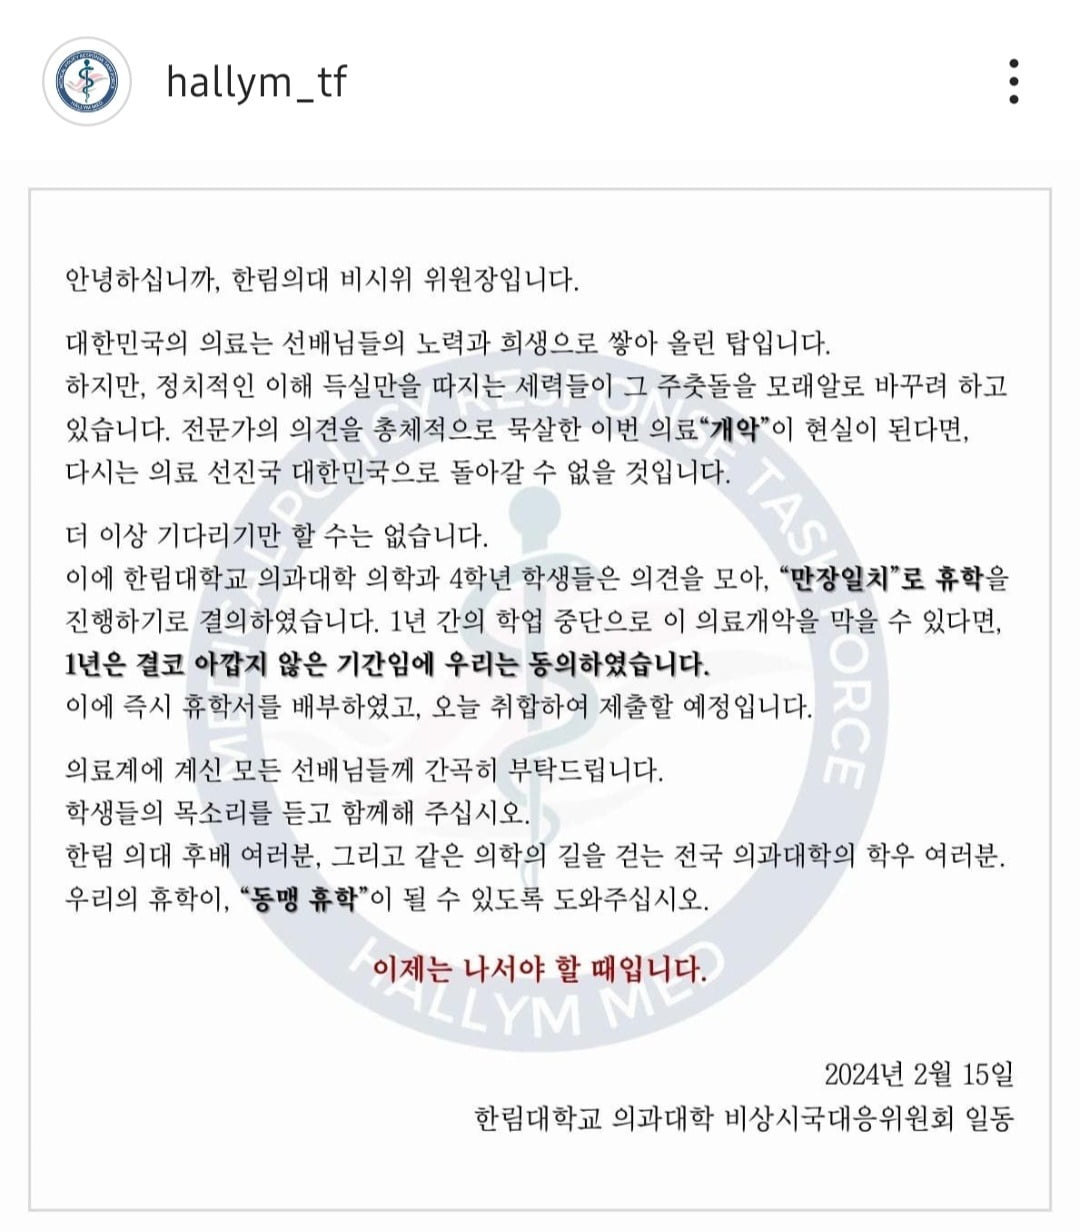 한림대 의대 비상시국대응위원회의 성명문. /사진=인스타그램 캡처